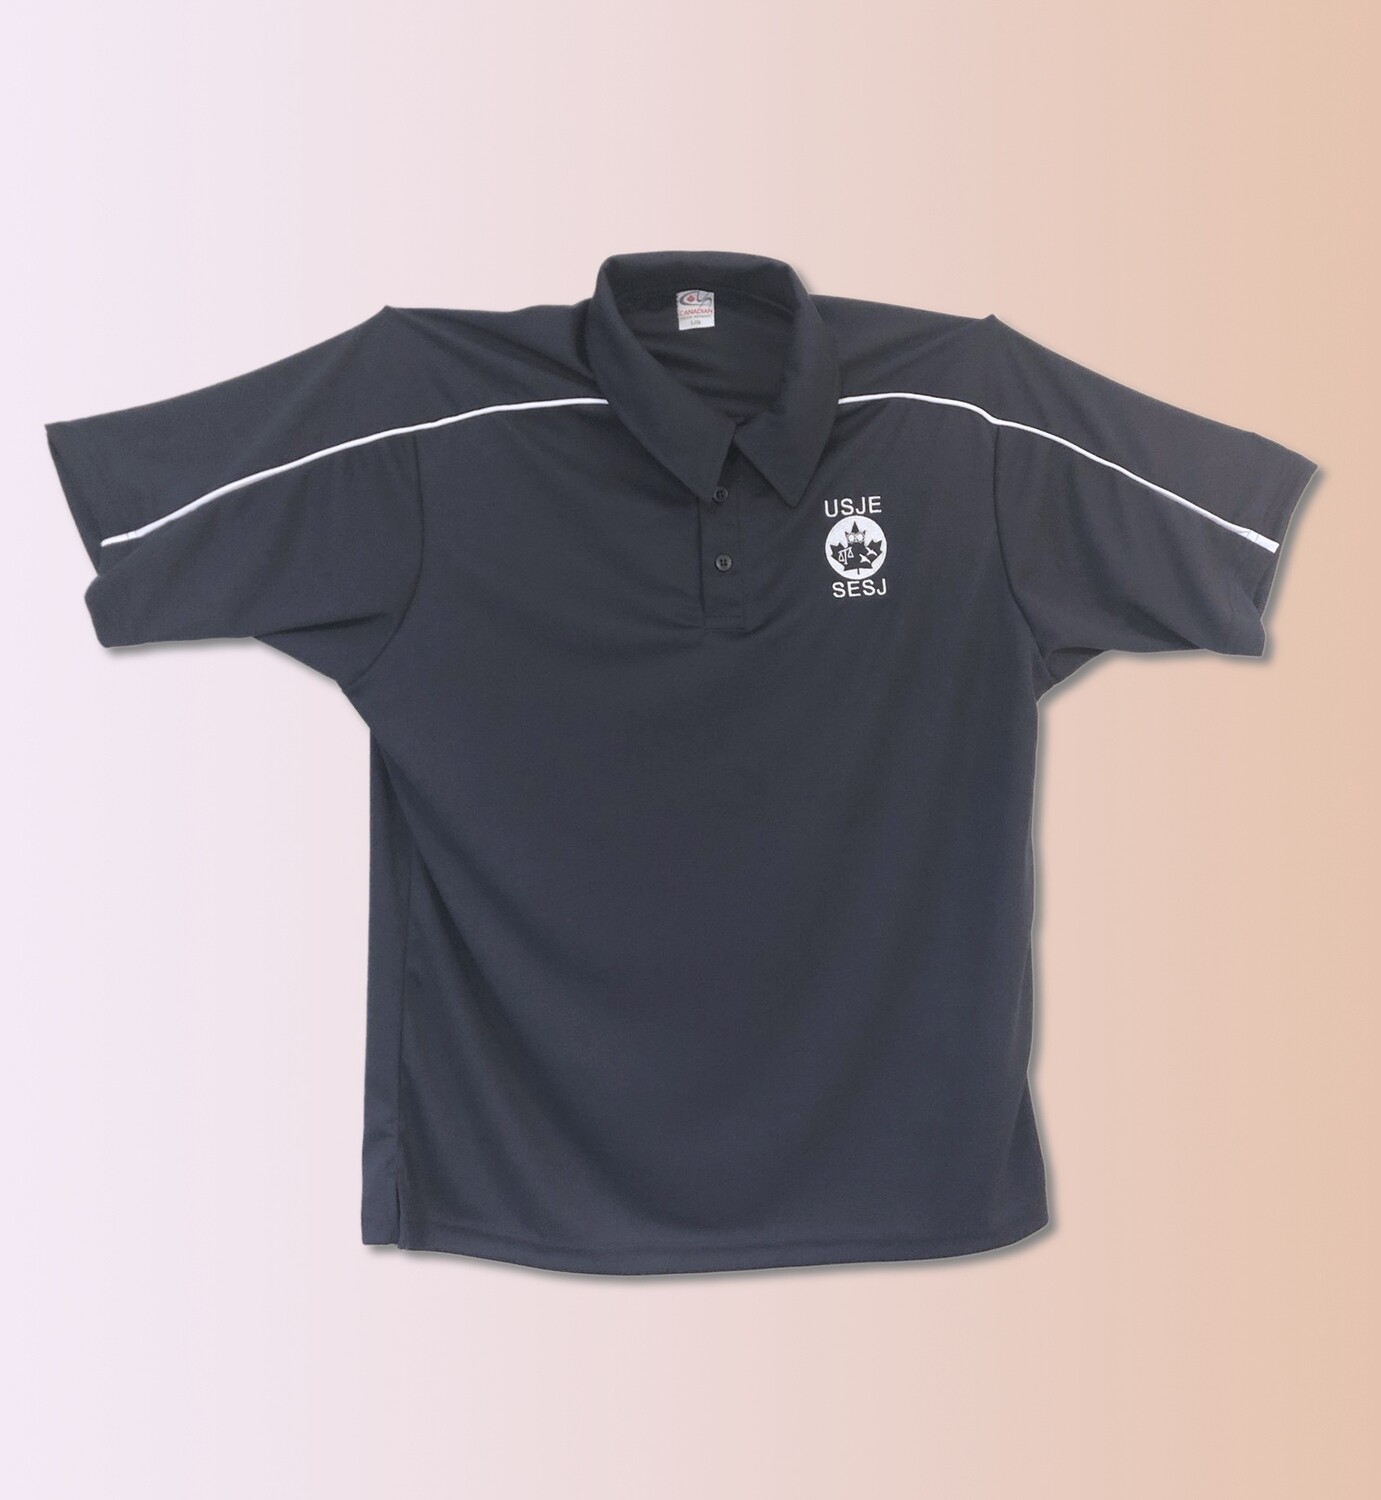 USJE Performance Piqué Polo Shirt (Black) (Ladies) / Polo performance en piqué du SESJ (Noir) (Femme)